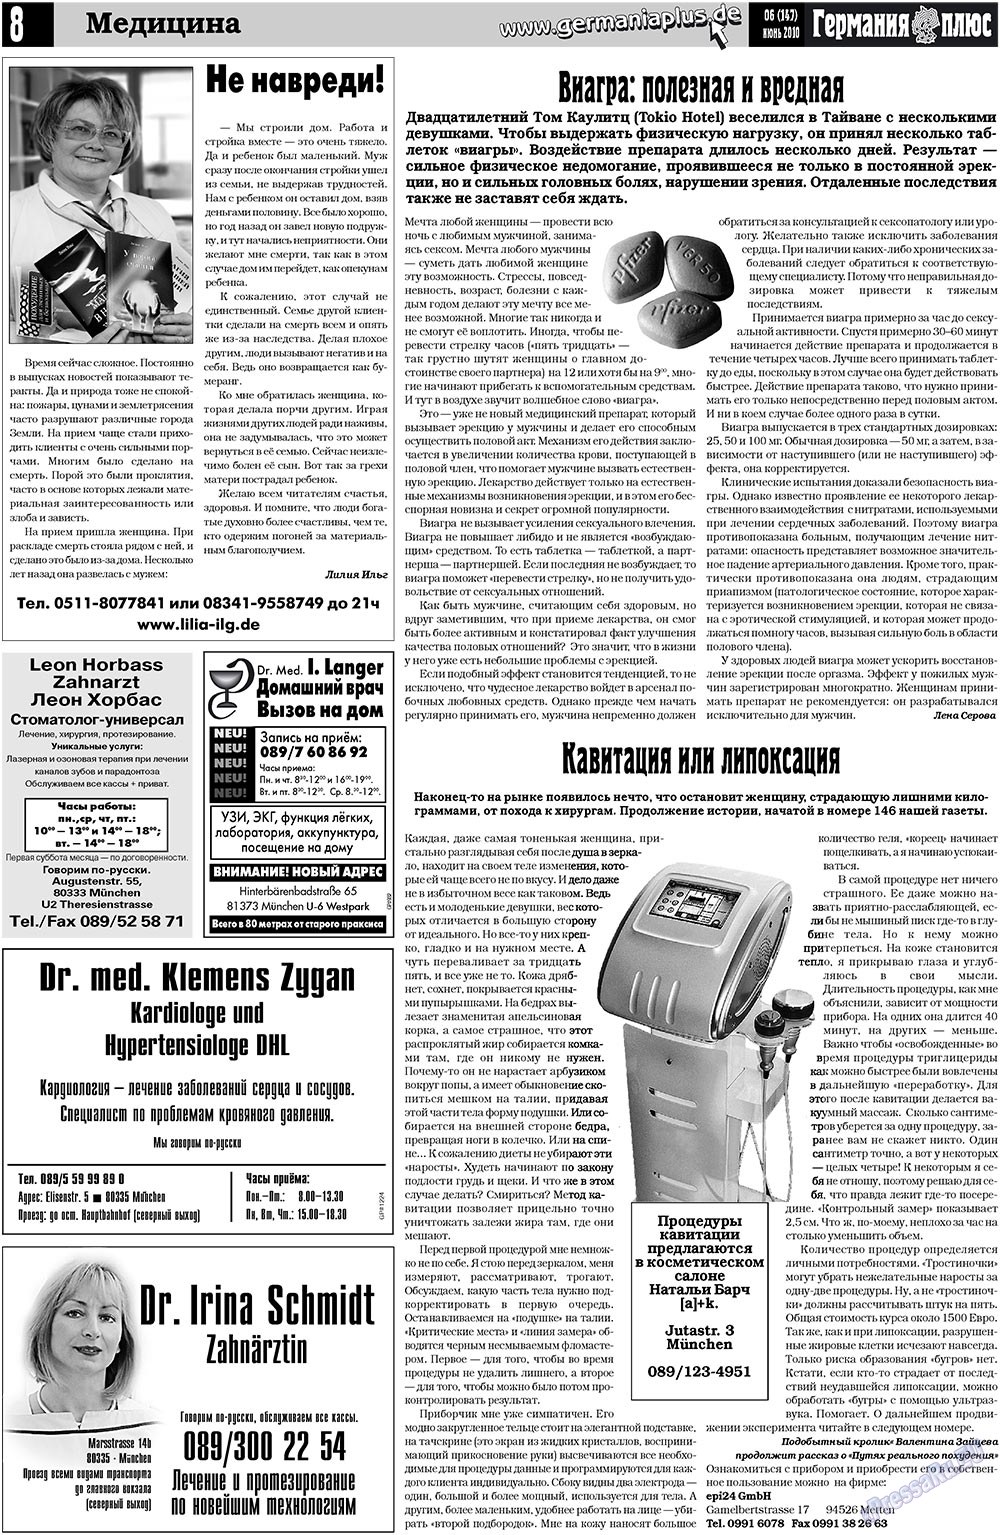 Германия плюс (газета). 2010 год, номер 6, стр. 8